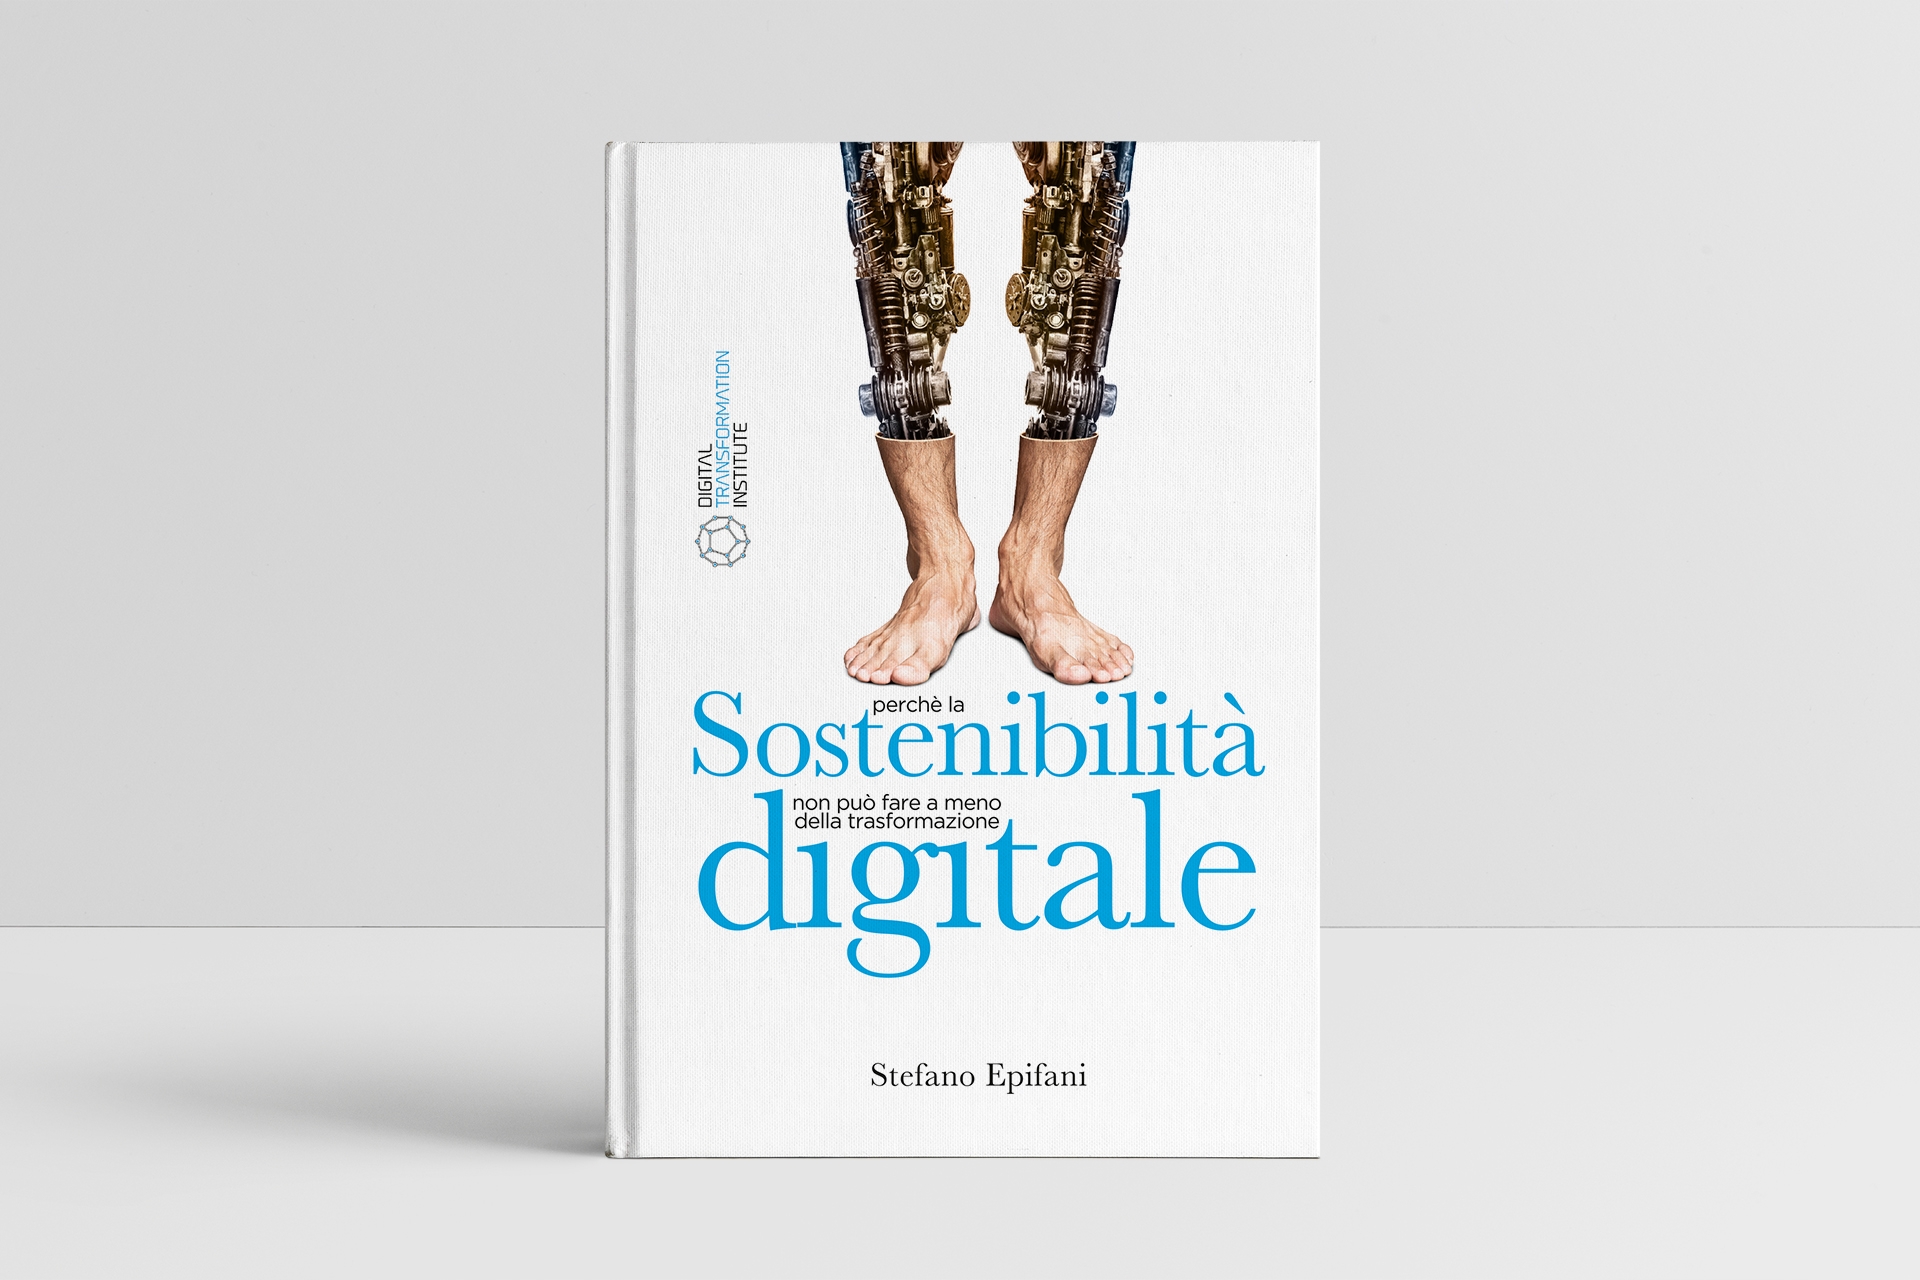 Stefano Epifani: il libro "Sostenibilità Digitale: perché la sostenibilità non può fare a meno della trasformazione digitale" di Stefano Epifani